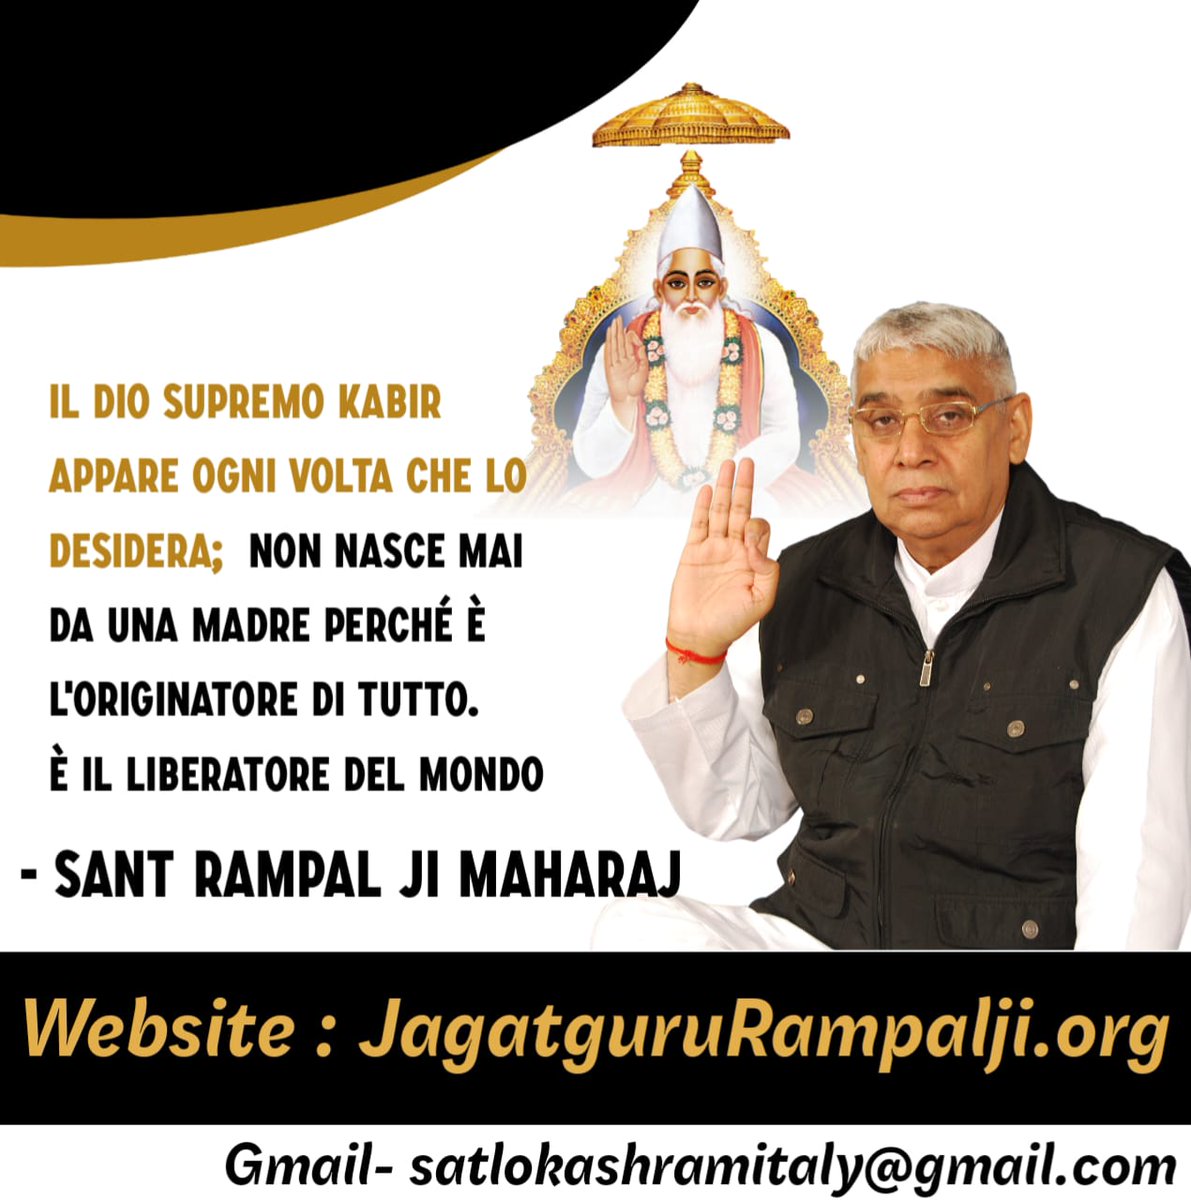 Tutti dovrebbero ascoltare il discorso spirituale del Vero Maestro Spirituale Sant Rampal Ji Maharaj per la pace e la salvezza eterna. - #itlay